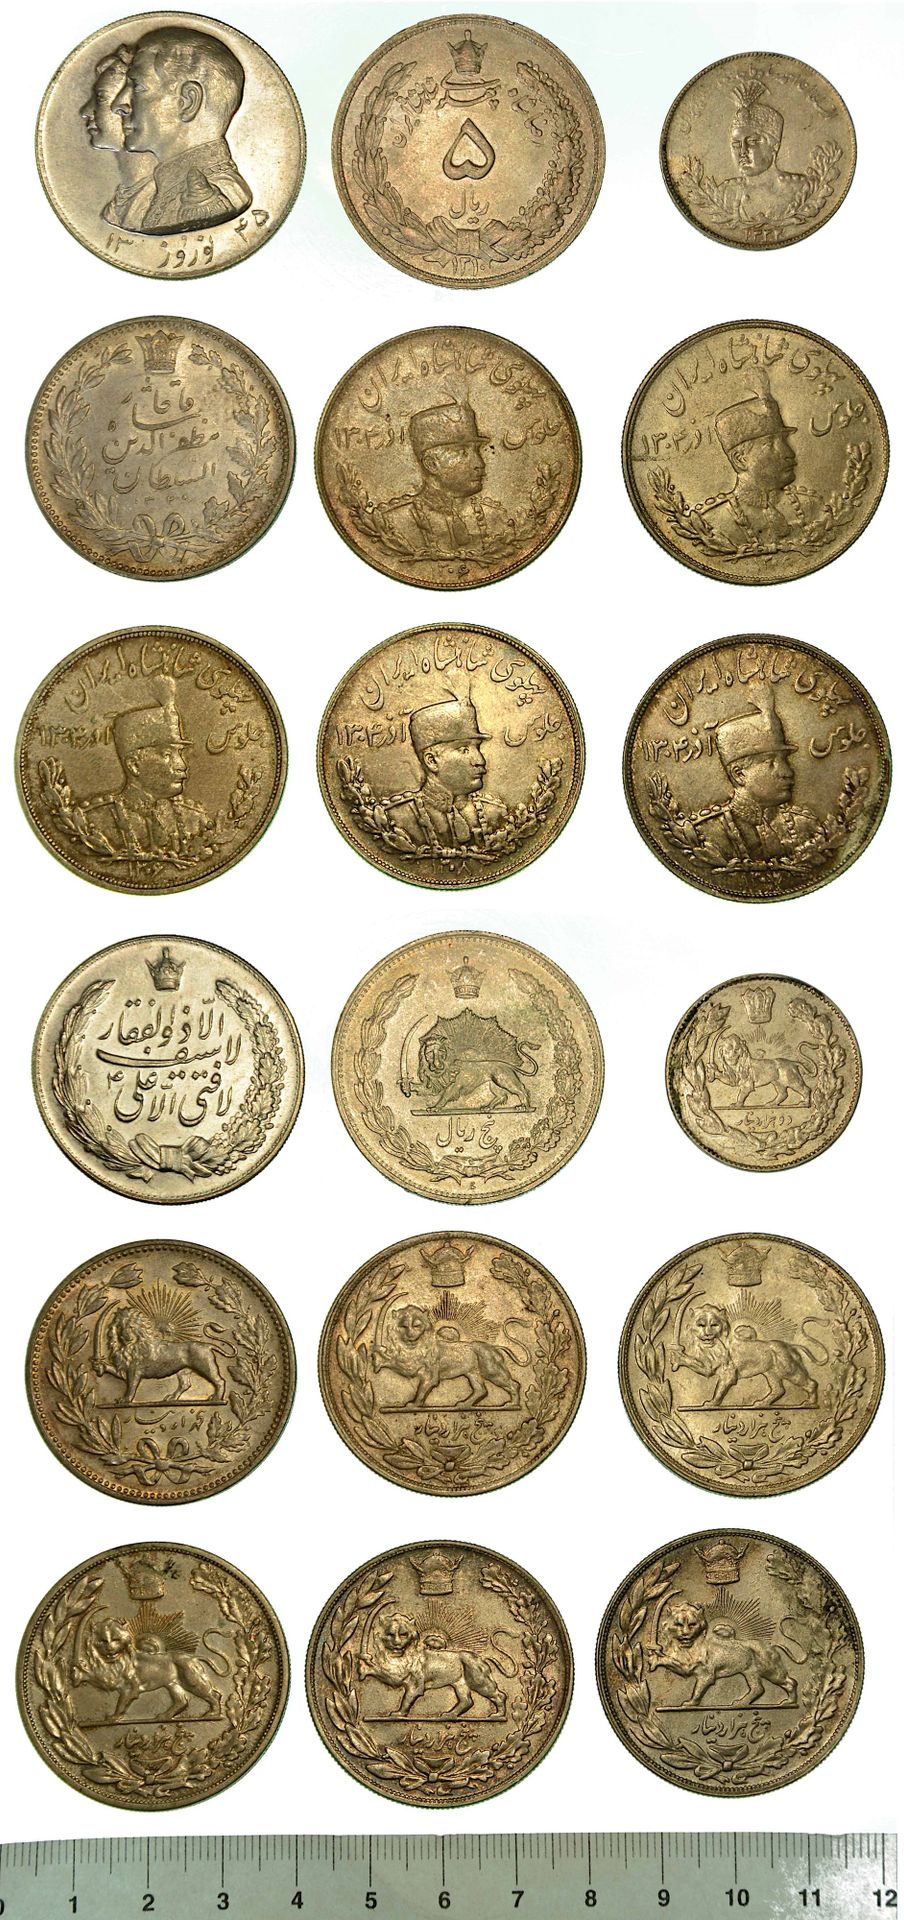 Monete estere PERSIA/IRAN。一批八枚硬币和一枚奖章。
莫扎法尔-丁-沙阿-卡贾尔，1896-1907。5克朗。艾哈迈德-沙阿-卡贾尔，1&hellip;